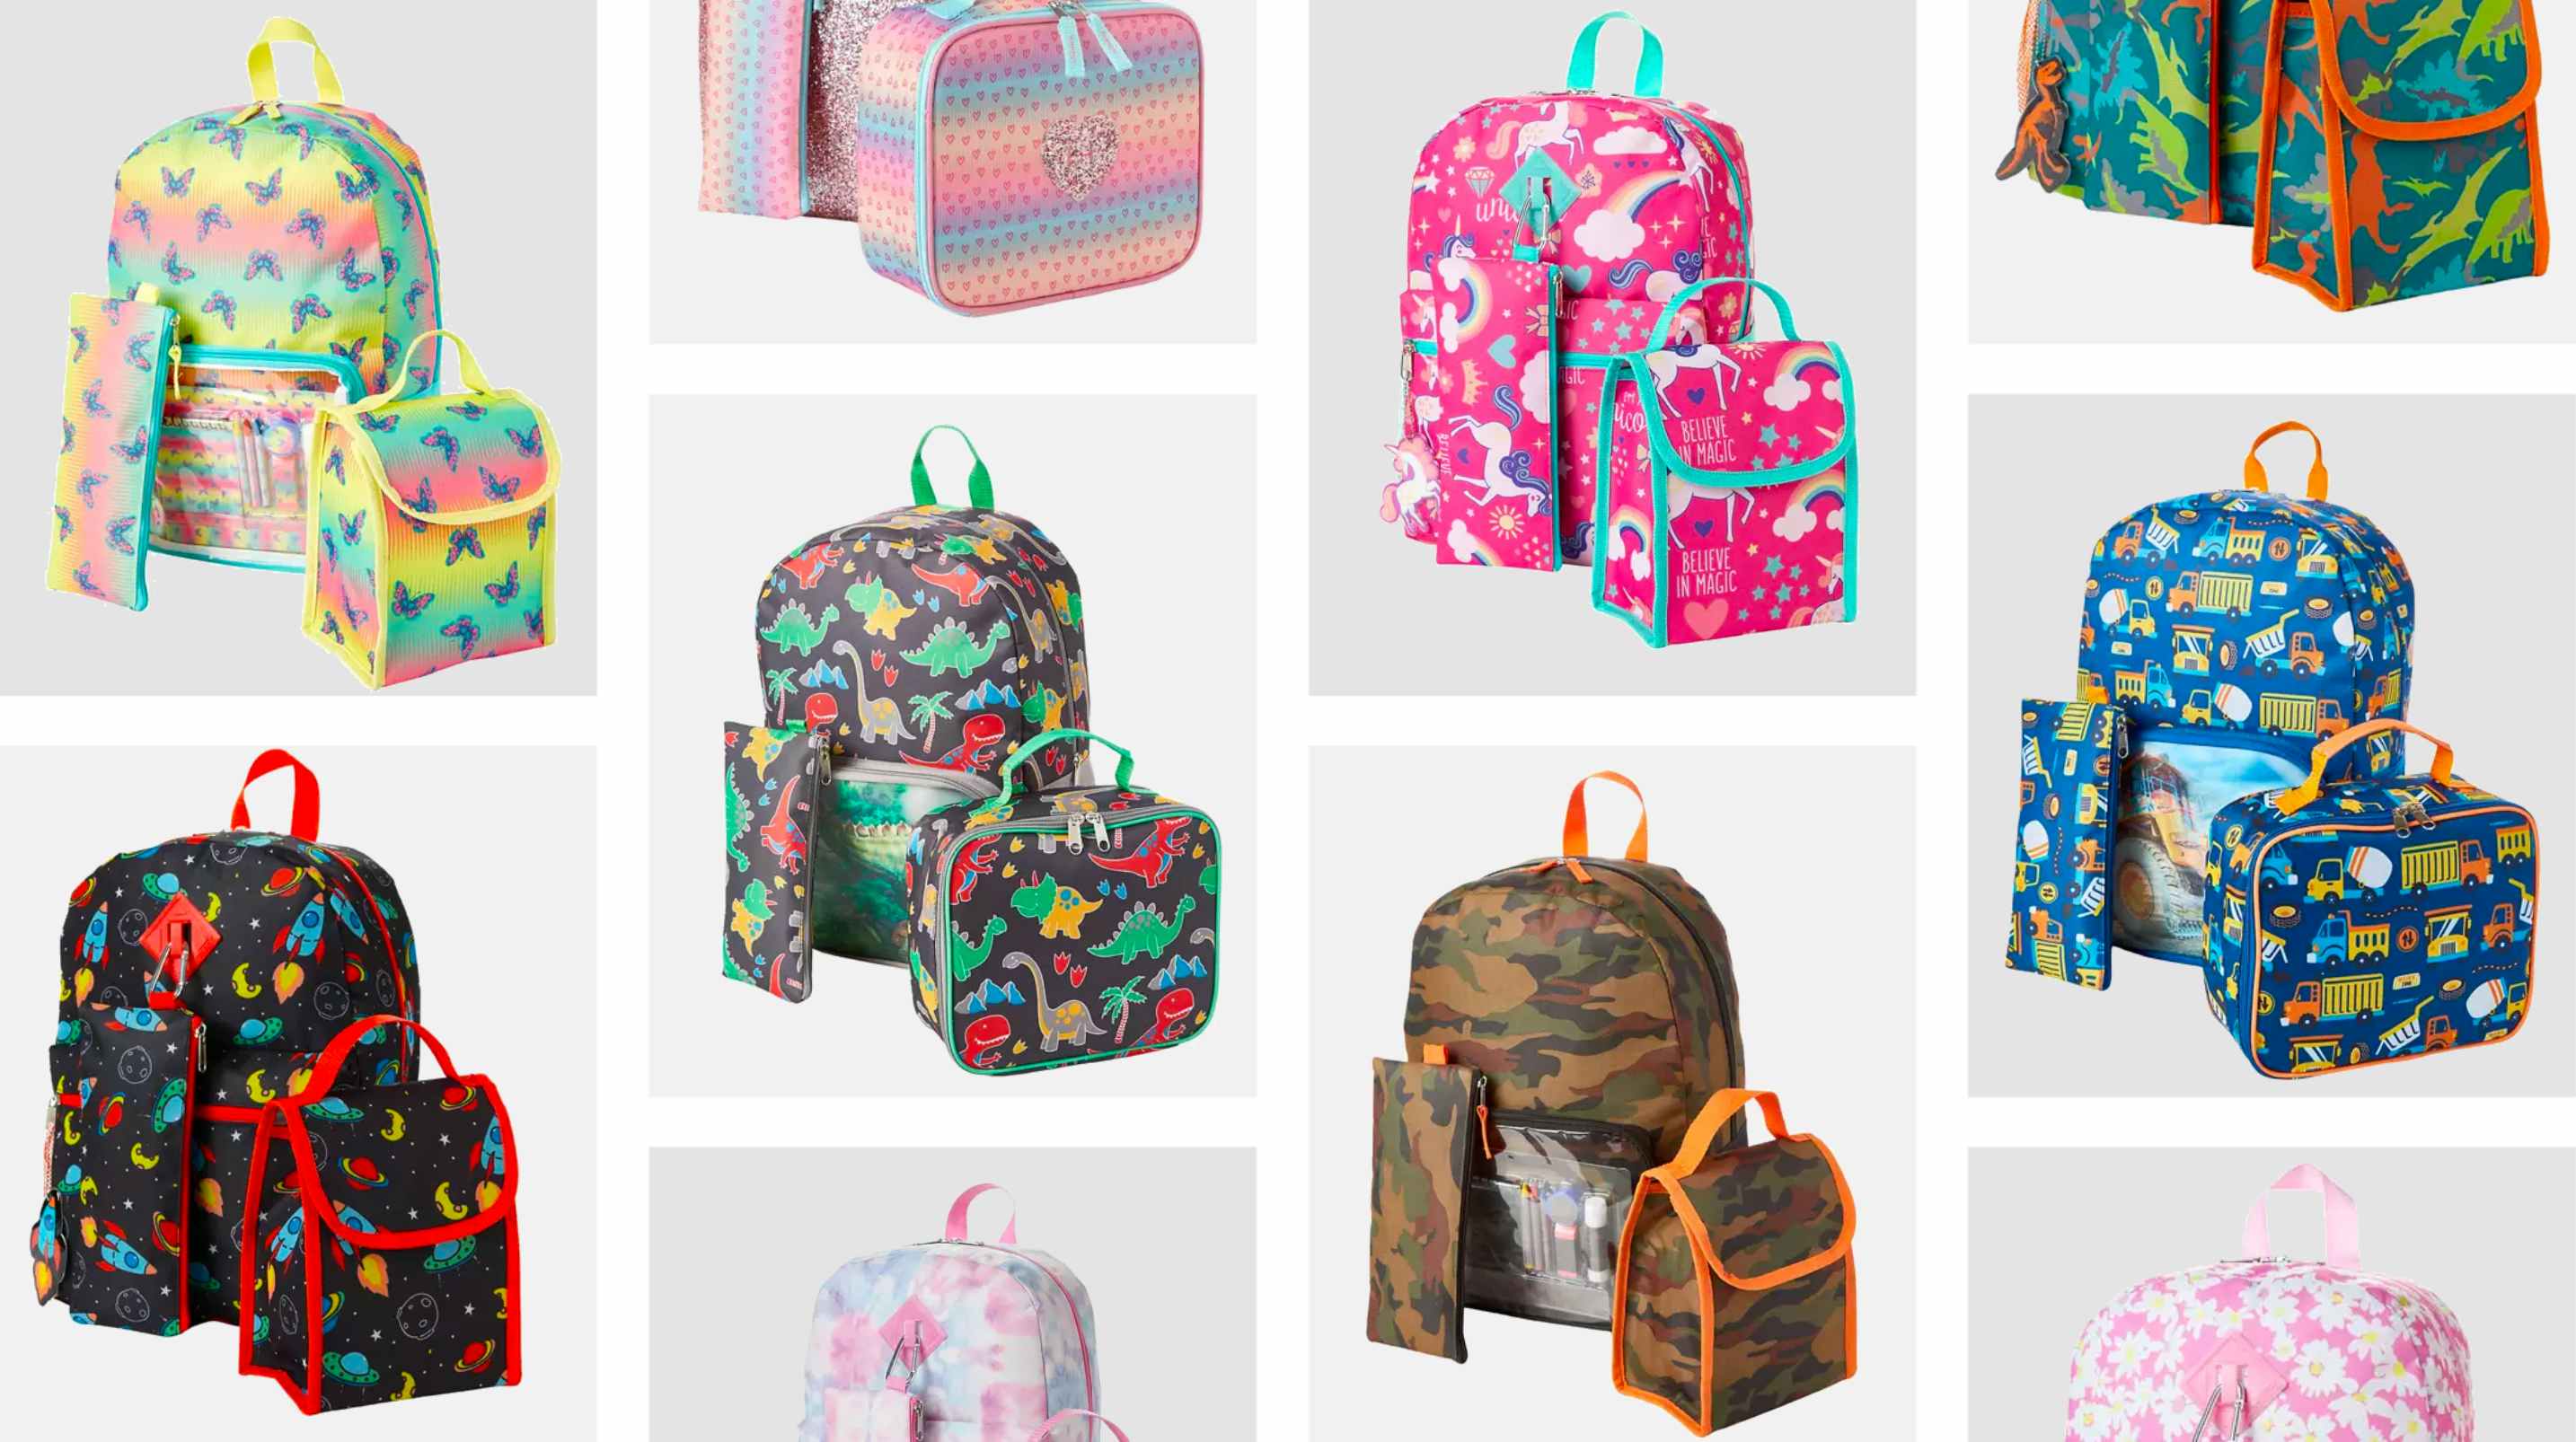 belk kids backpack sets collage 2022